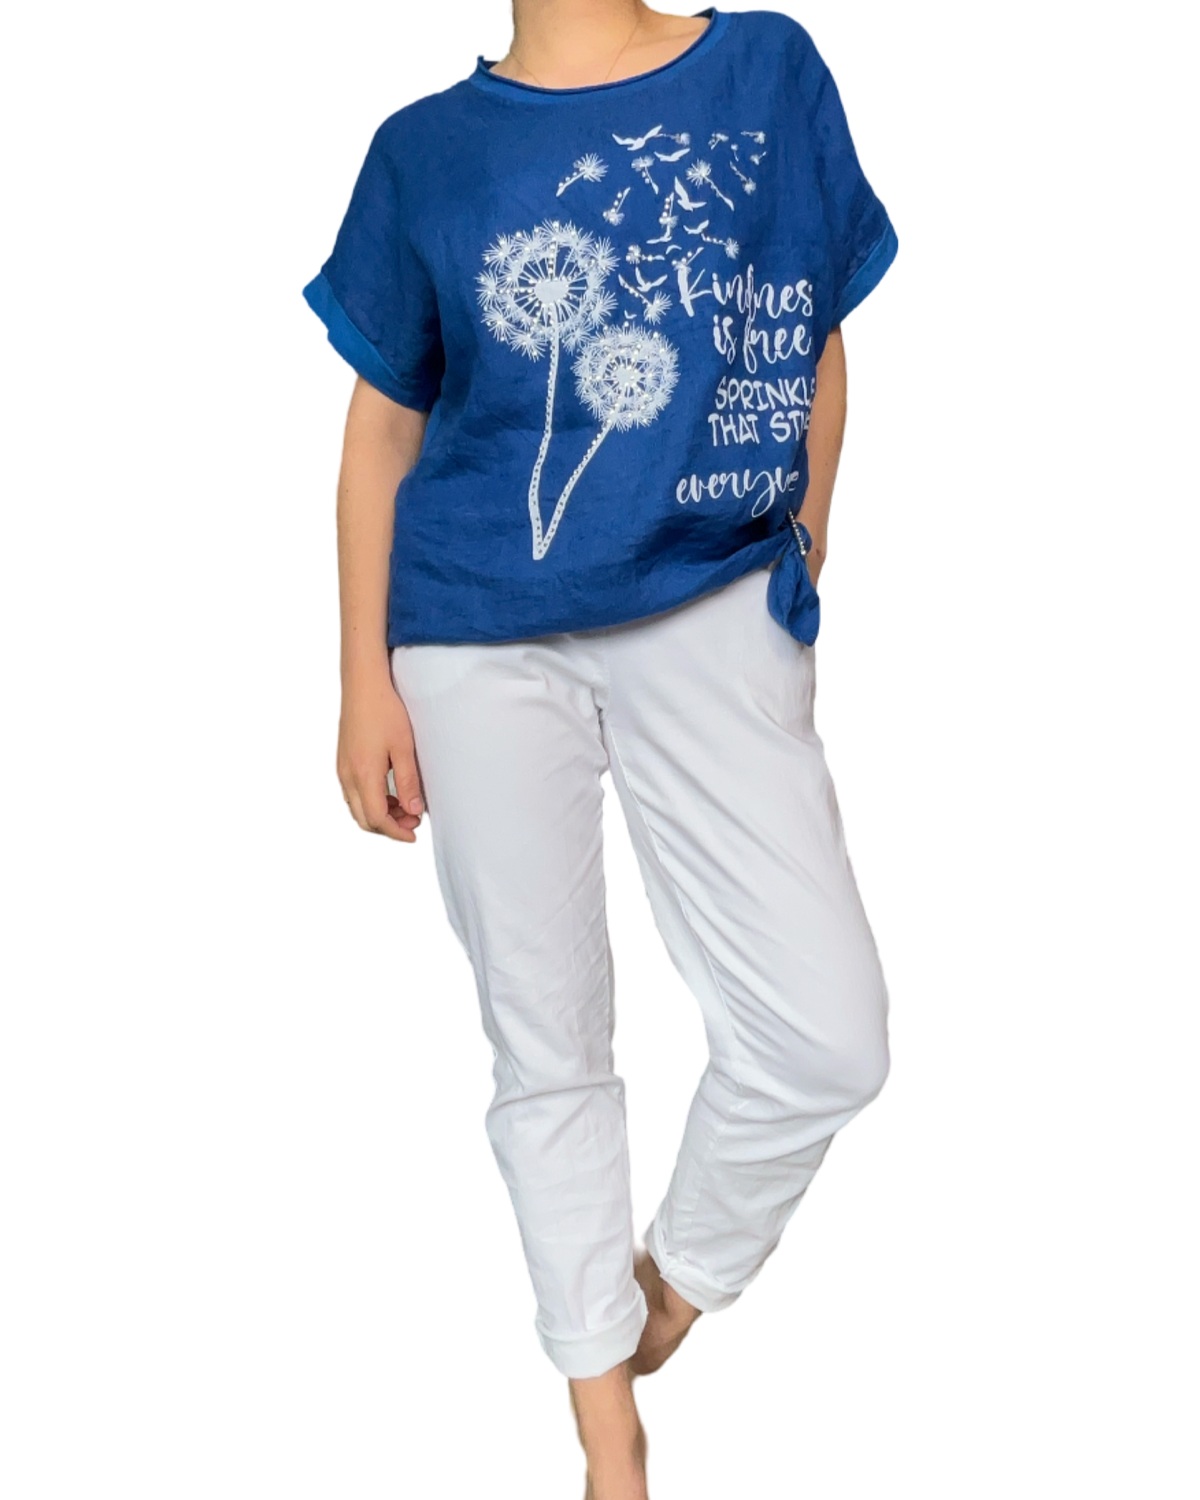 T-shirt bleu royal pour femme avec imprimé de pissenlits avec pantalon blanc.